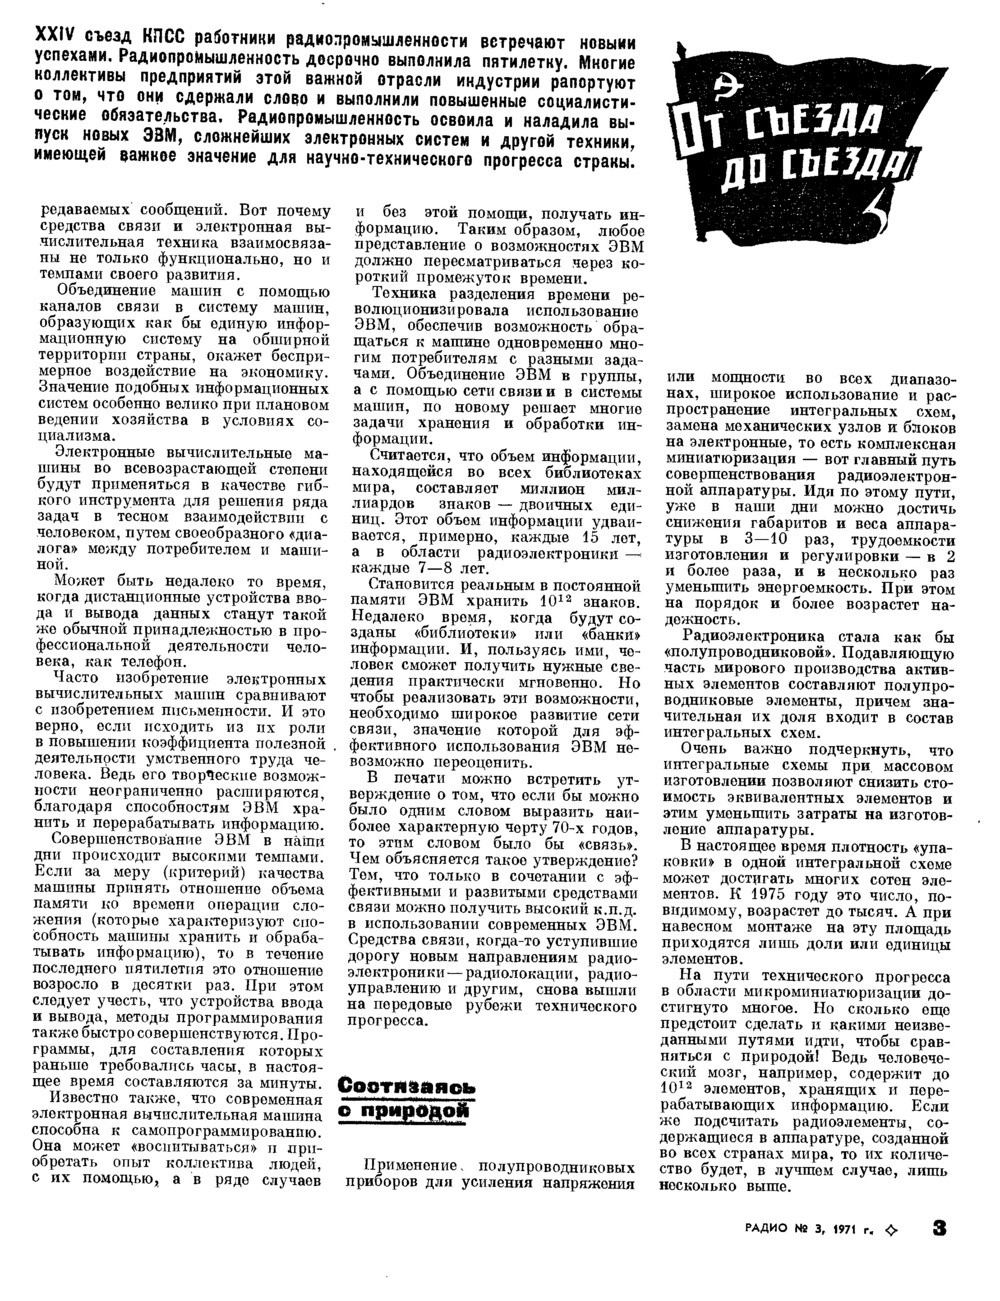 Кибернетика в СССР: от лженауки до панацеи - 9